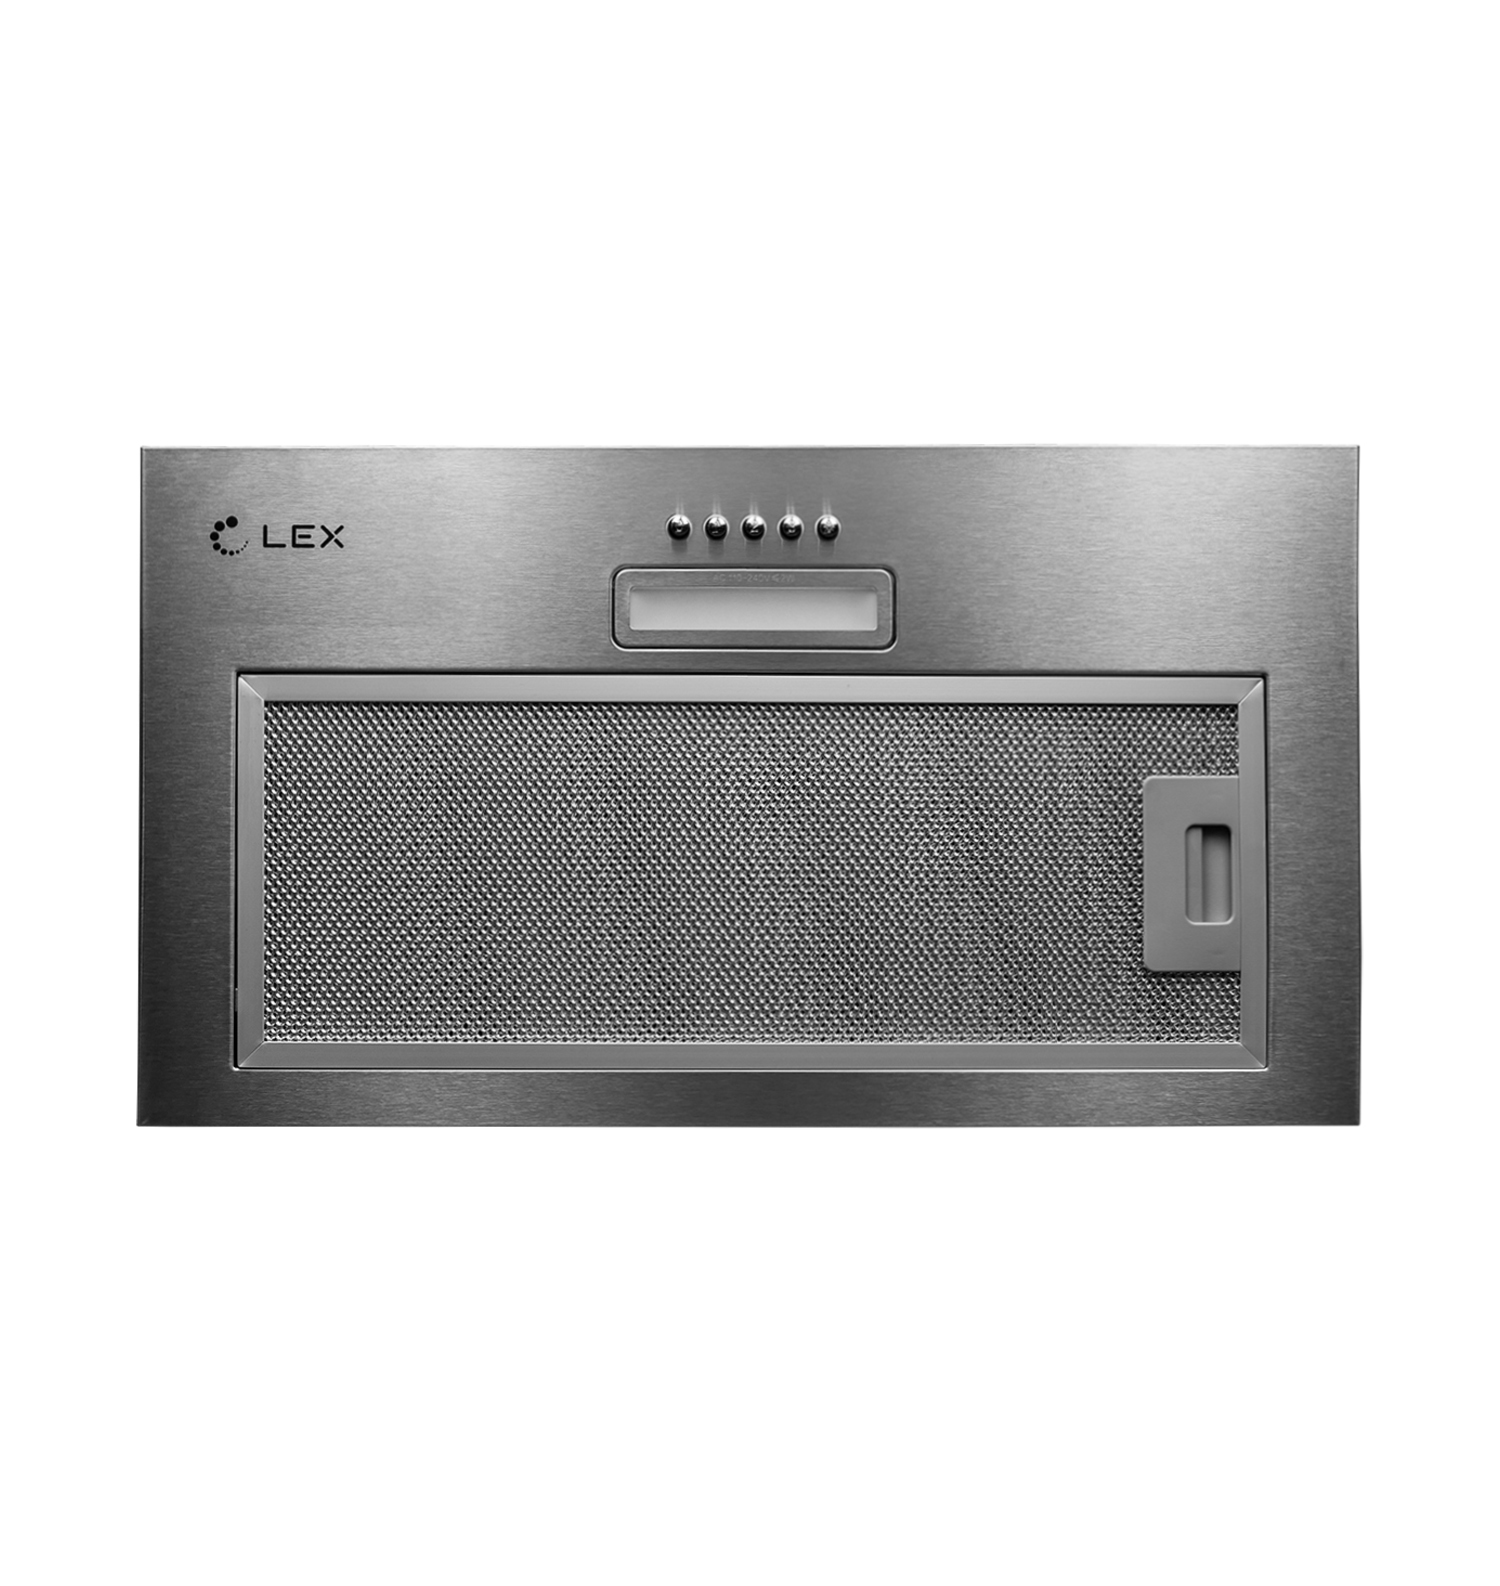 Кухонная вытяжка встраиваемая Lex GS Bloc Light 60 см серая (CHTI000328) кухонная вытяжка встраиваемая lex gs bloc p 60 см серая chti000319